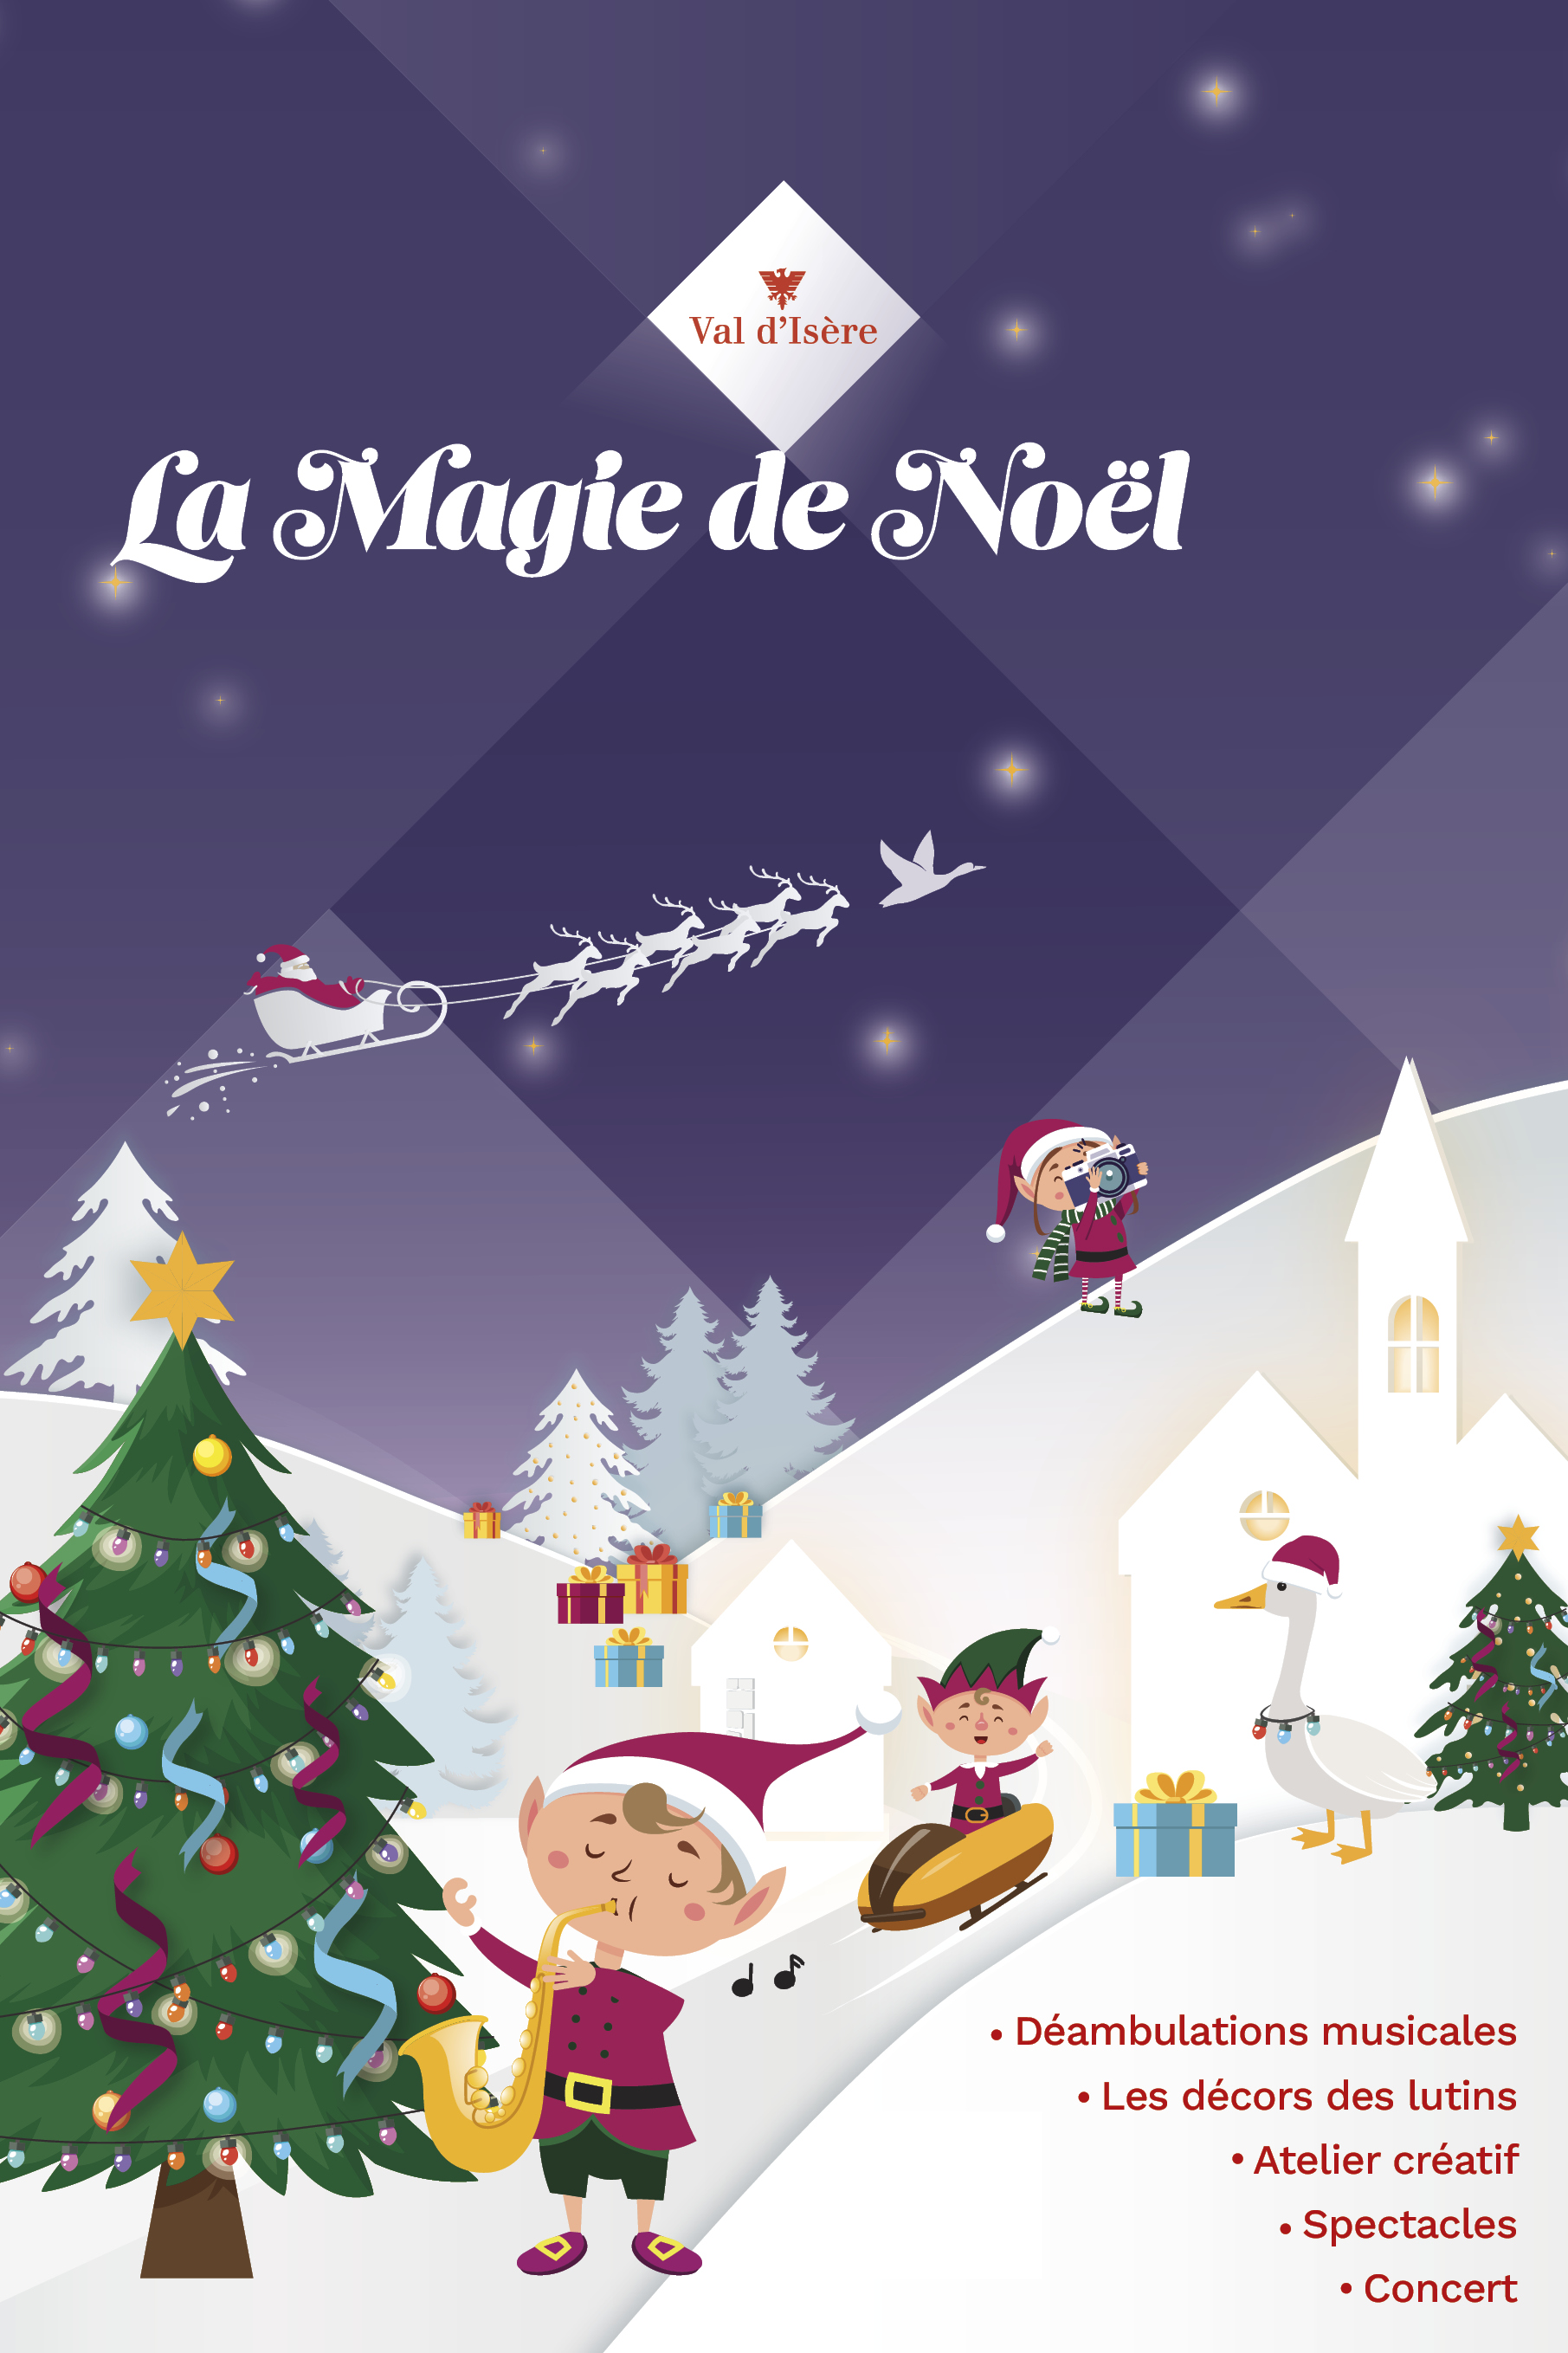 La Magie de Noel à Val d'Isère